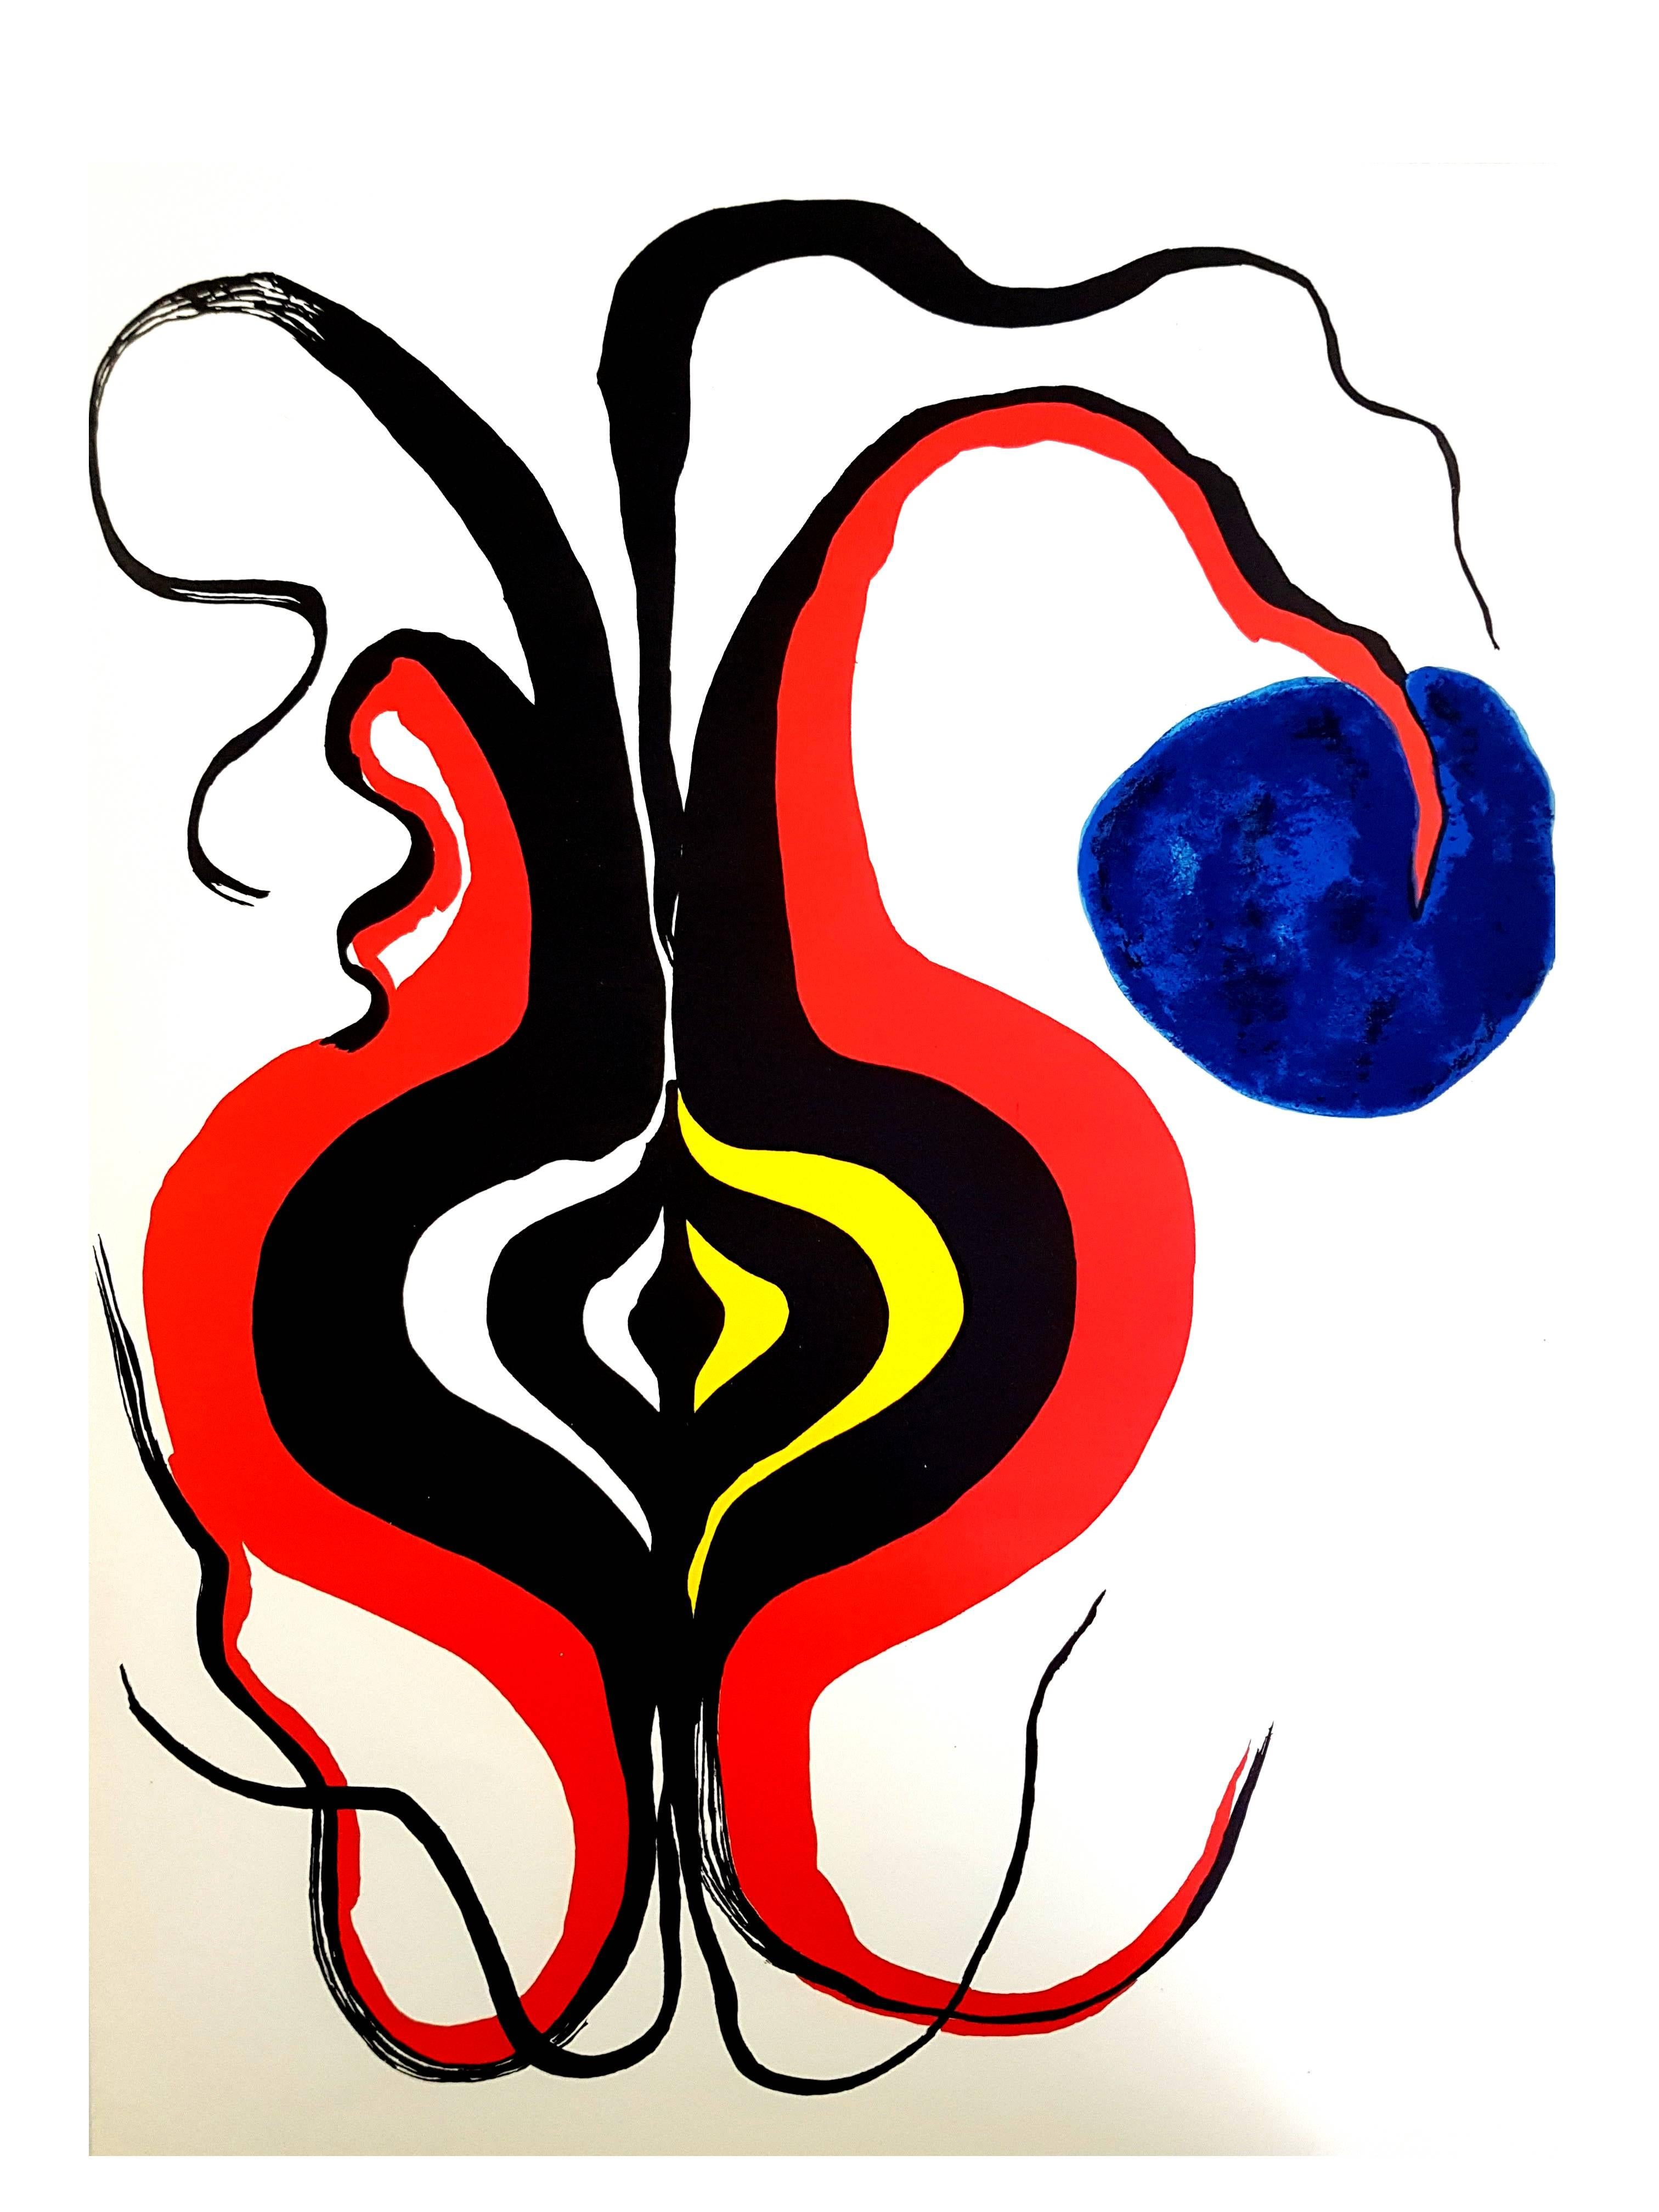 Alexander Calder - Original Lithograph - Behind the Mirror
1 Original lithograph created in 1976 
Dimensions: 38 x 28 cm
Source: Derrière le miroir (DLM), n°221, 1976

Alexander Calder (1898 - 1976)

The American artist Alexander Calder was born in